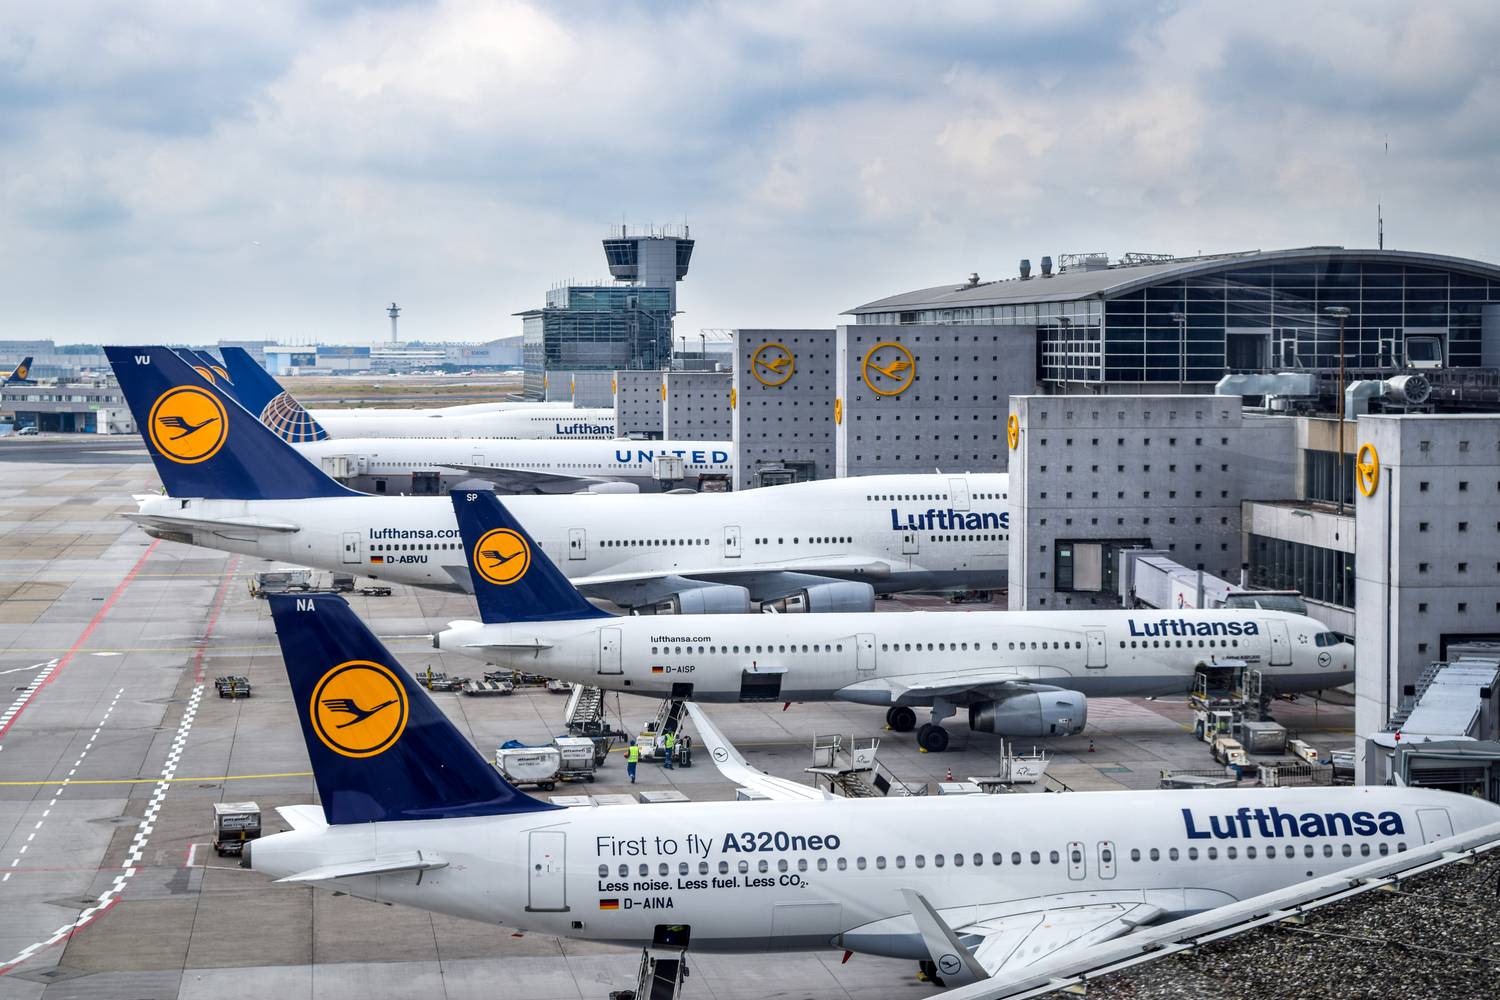 Alemania: Sindicato convoca una huelga de tres días - Lufthansa - Lineas aéreas de Alemania (LH): opiniones, dudas